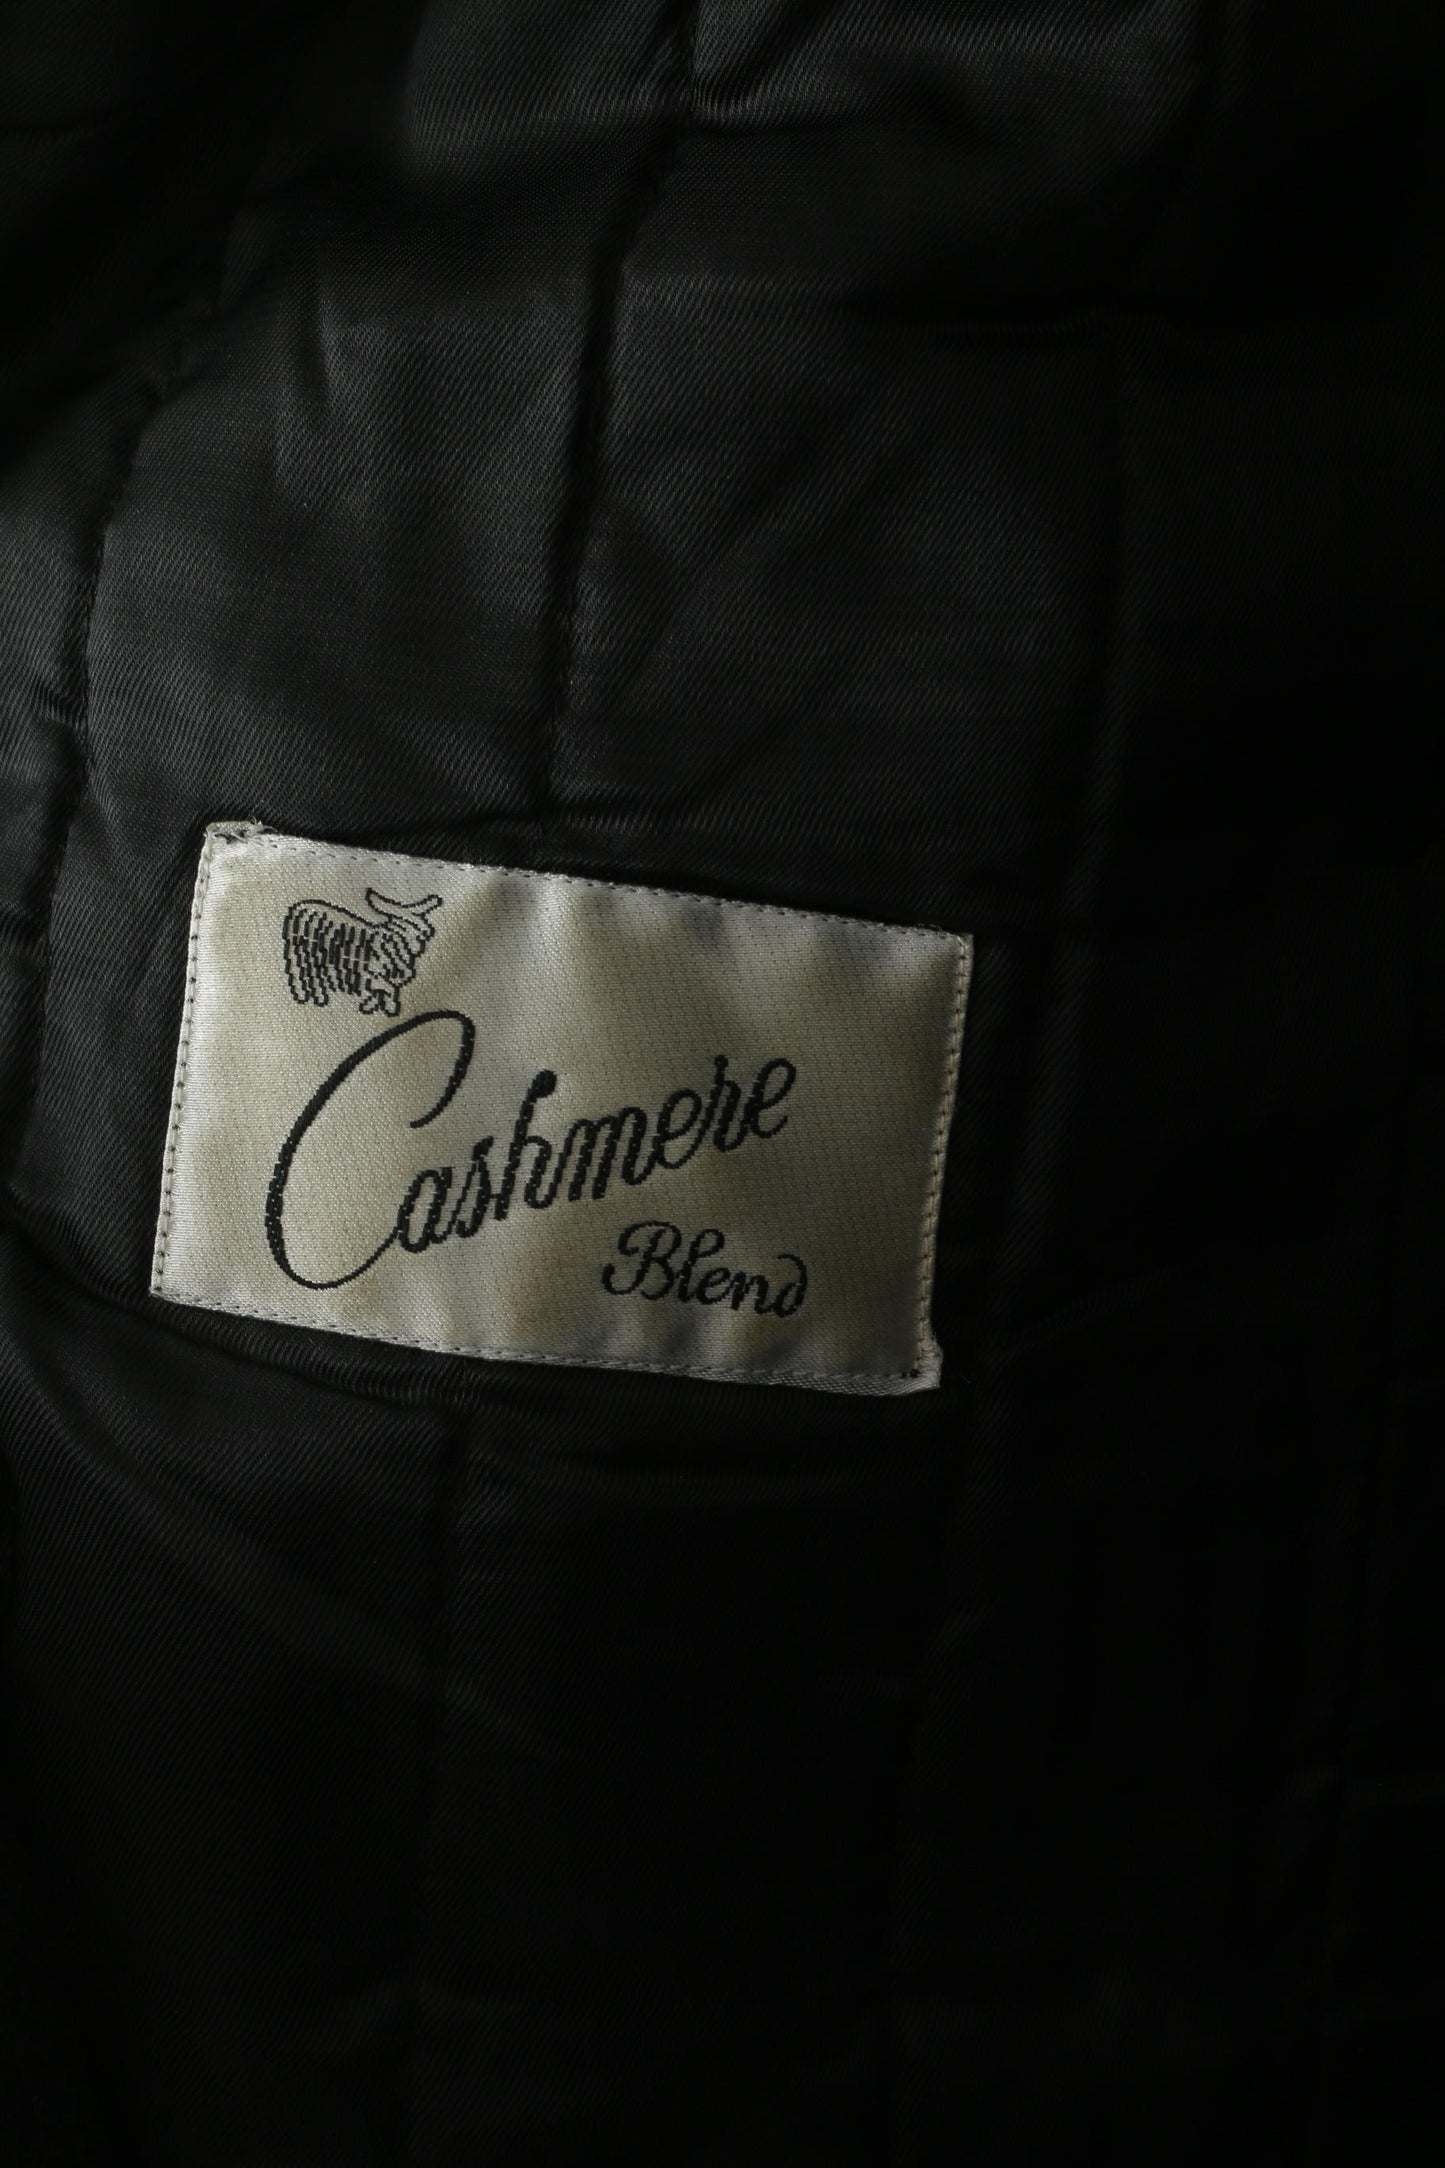 Cappotto Di Caprio Uomo 48 XL Cappotto Monopetto Vintage in Misto Lana e Cashmere Nero